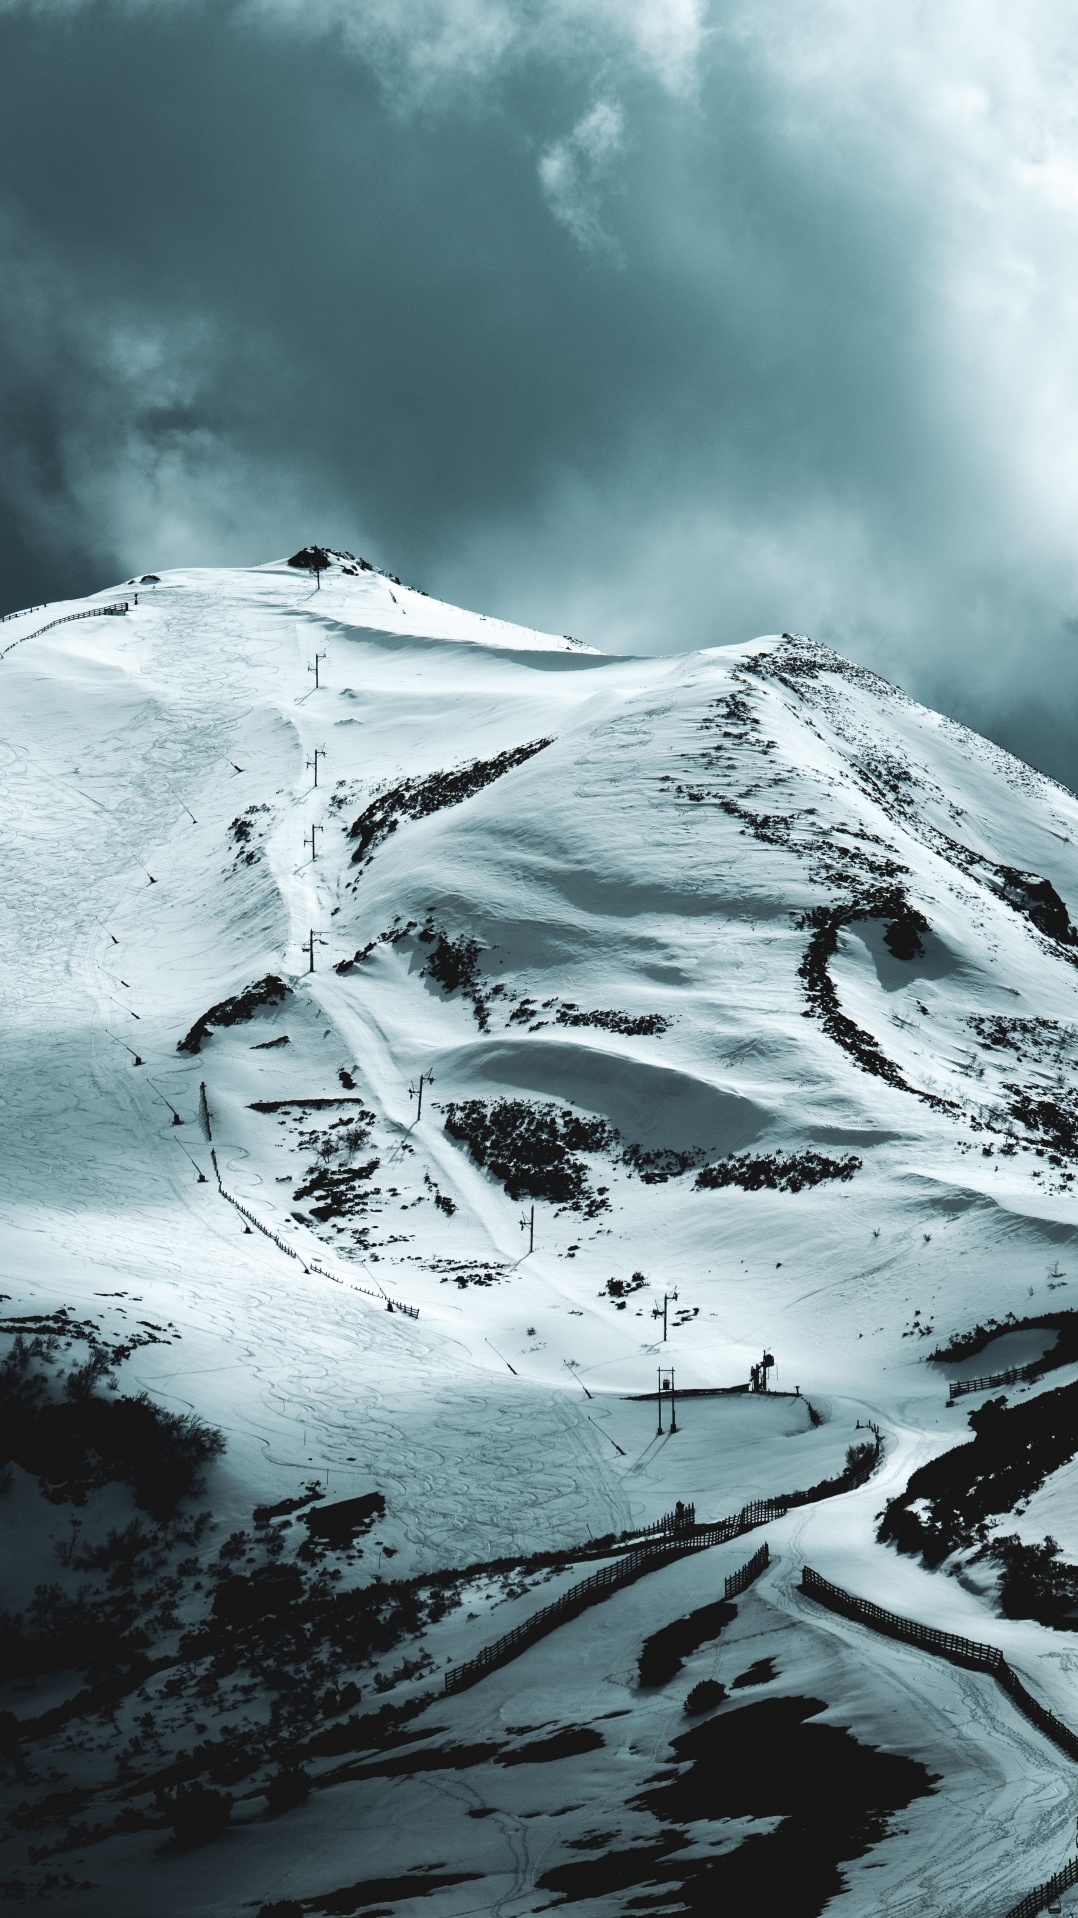 вальгранде - пахарес, горные лыжи, лыжи, снег, горнолыжный курорт